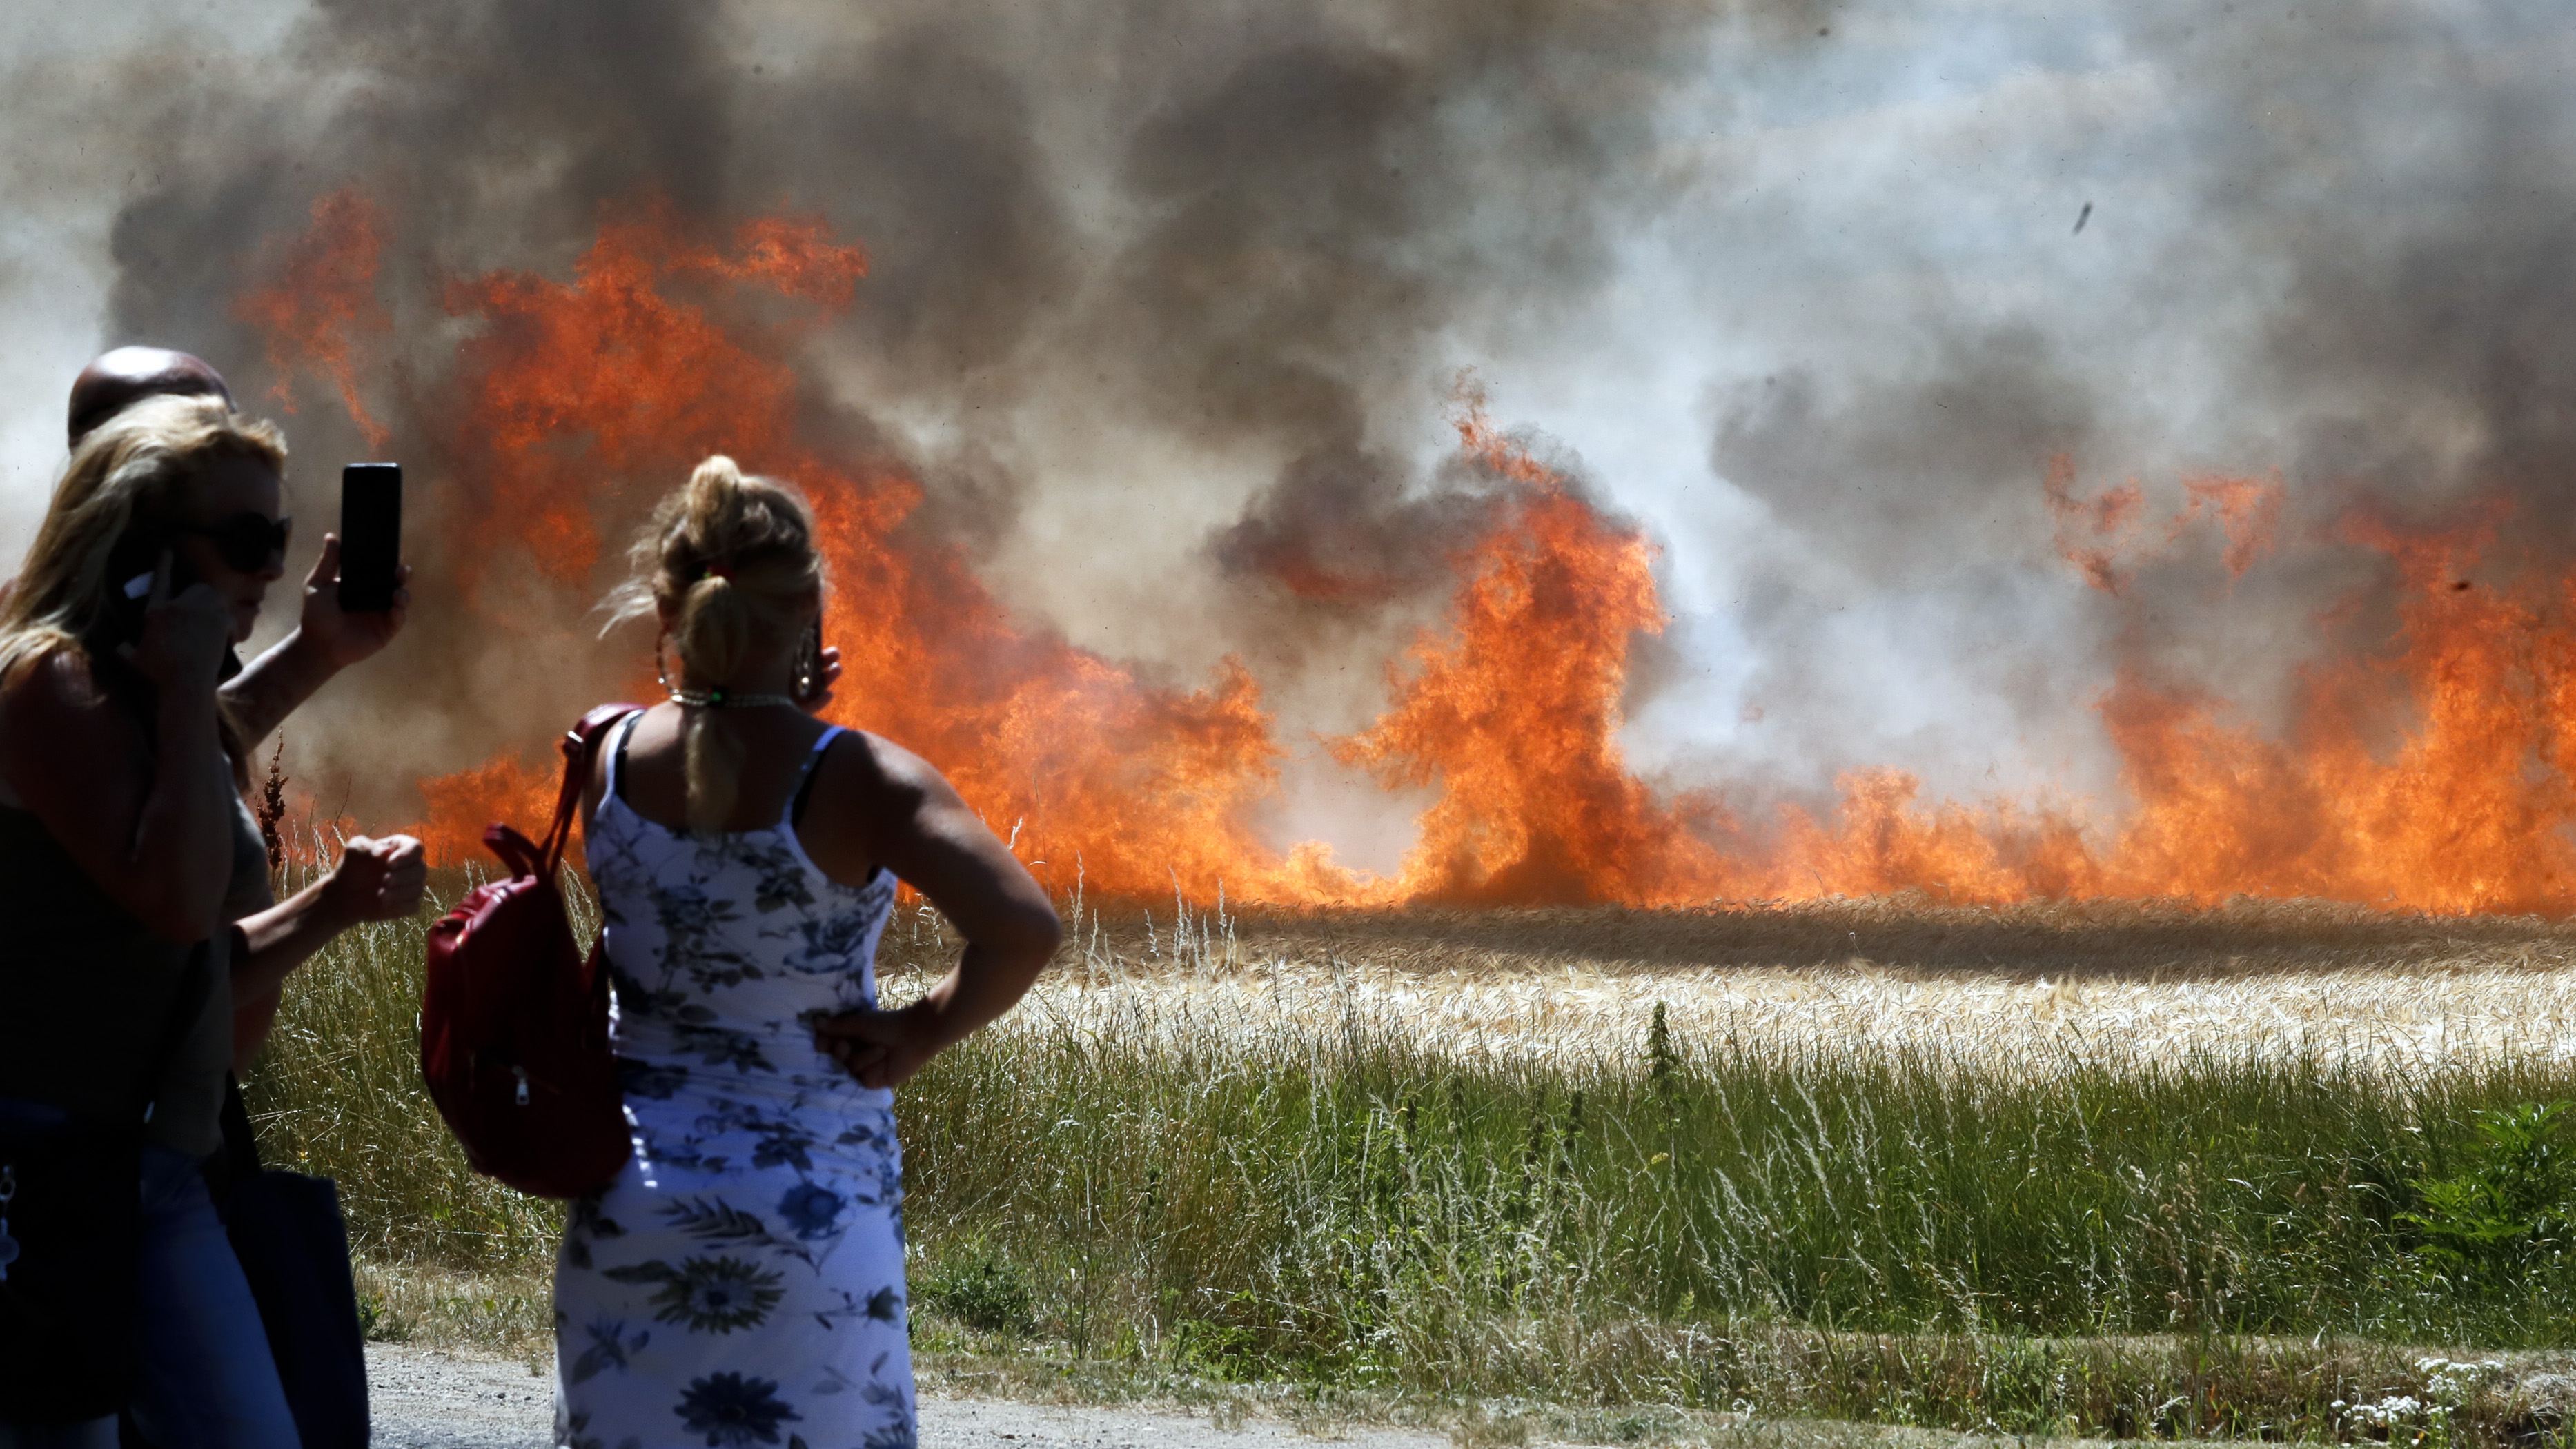 Tűz ütött ki Emőd határában, több száz hektár ég - fotók - Blikk